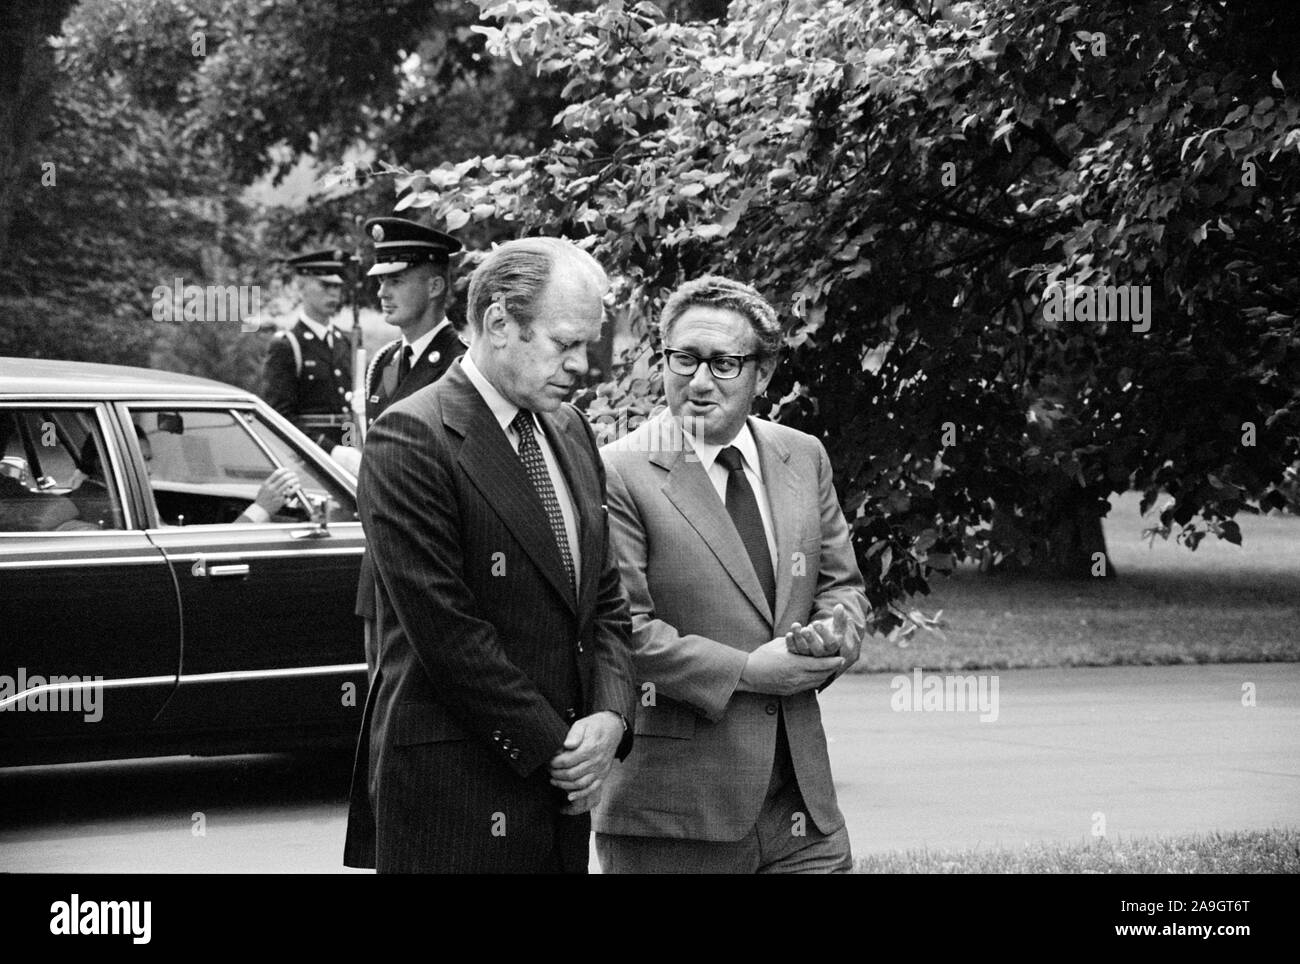 Us-Präsident Gerald Ford und Außenminister Henry Kissinger, unterhalten, auf dem Gelände des Weißen Hauses, Washington, D.C., USA, Foto: Thomas J. O'Halloran, 16. August 1974 Stockfoto